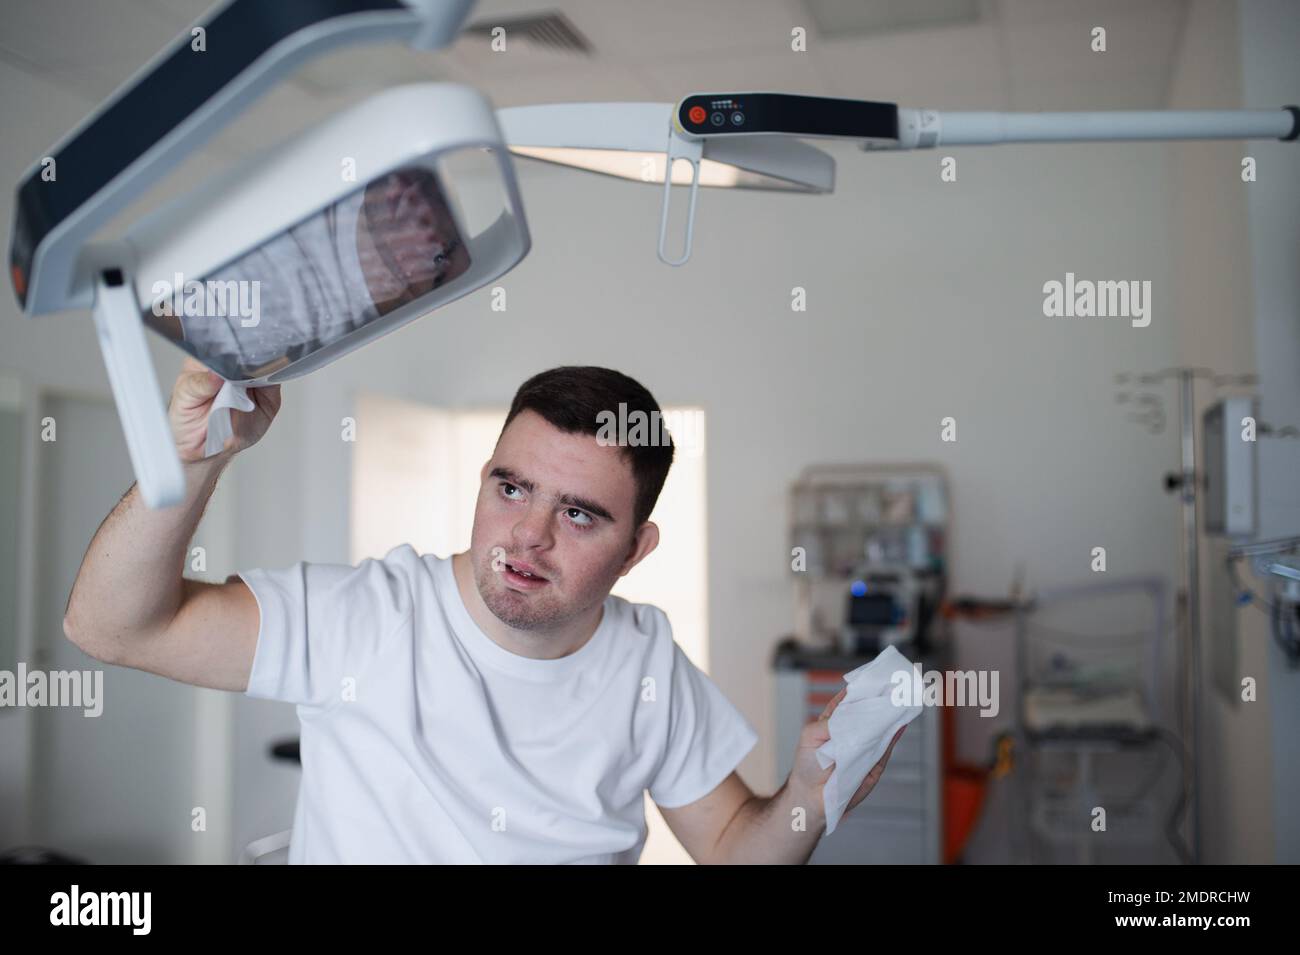 Giovane uomo con giù syndome che lavora in ospedale come aiutante, più pulito. Concetto di integrazione di persone con disabilità nella società. Foto Stock